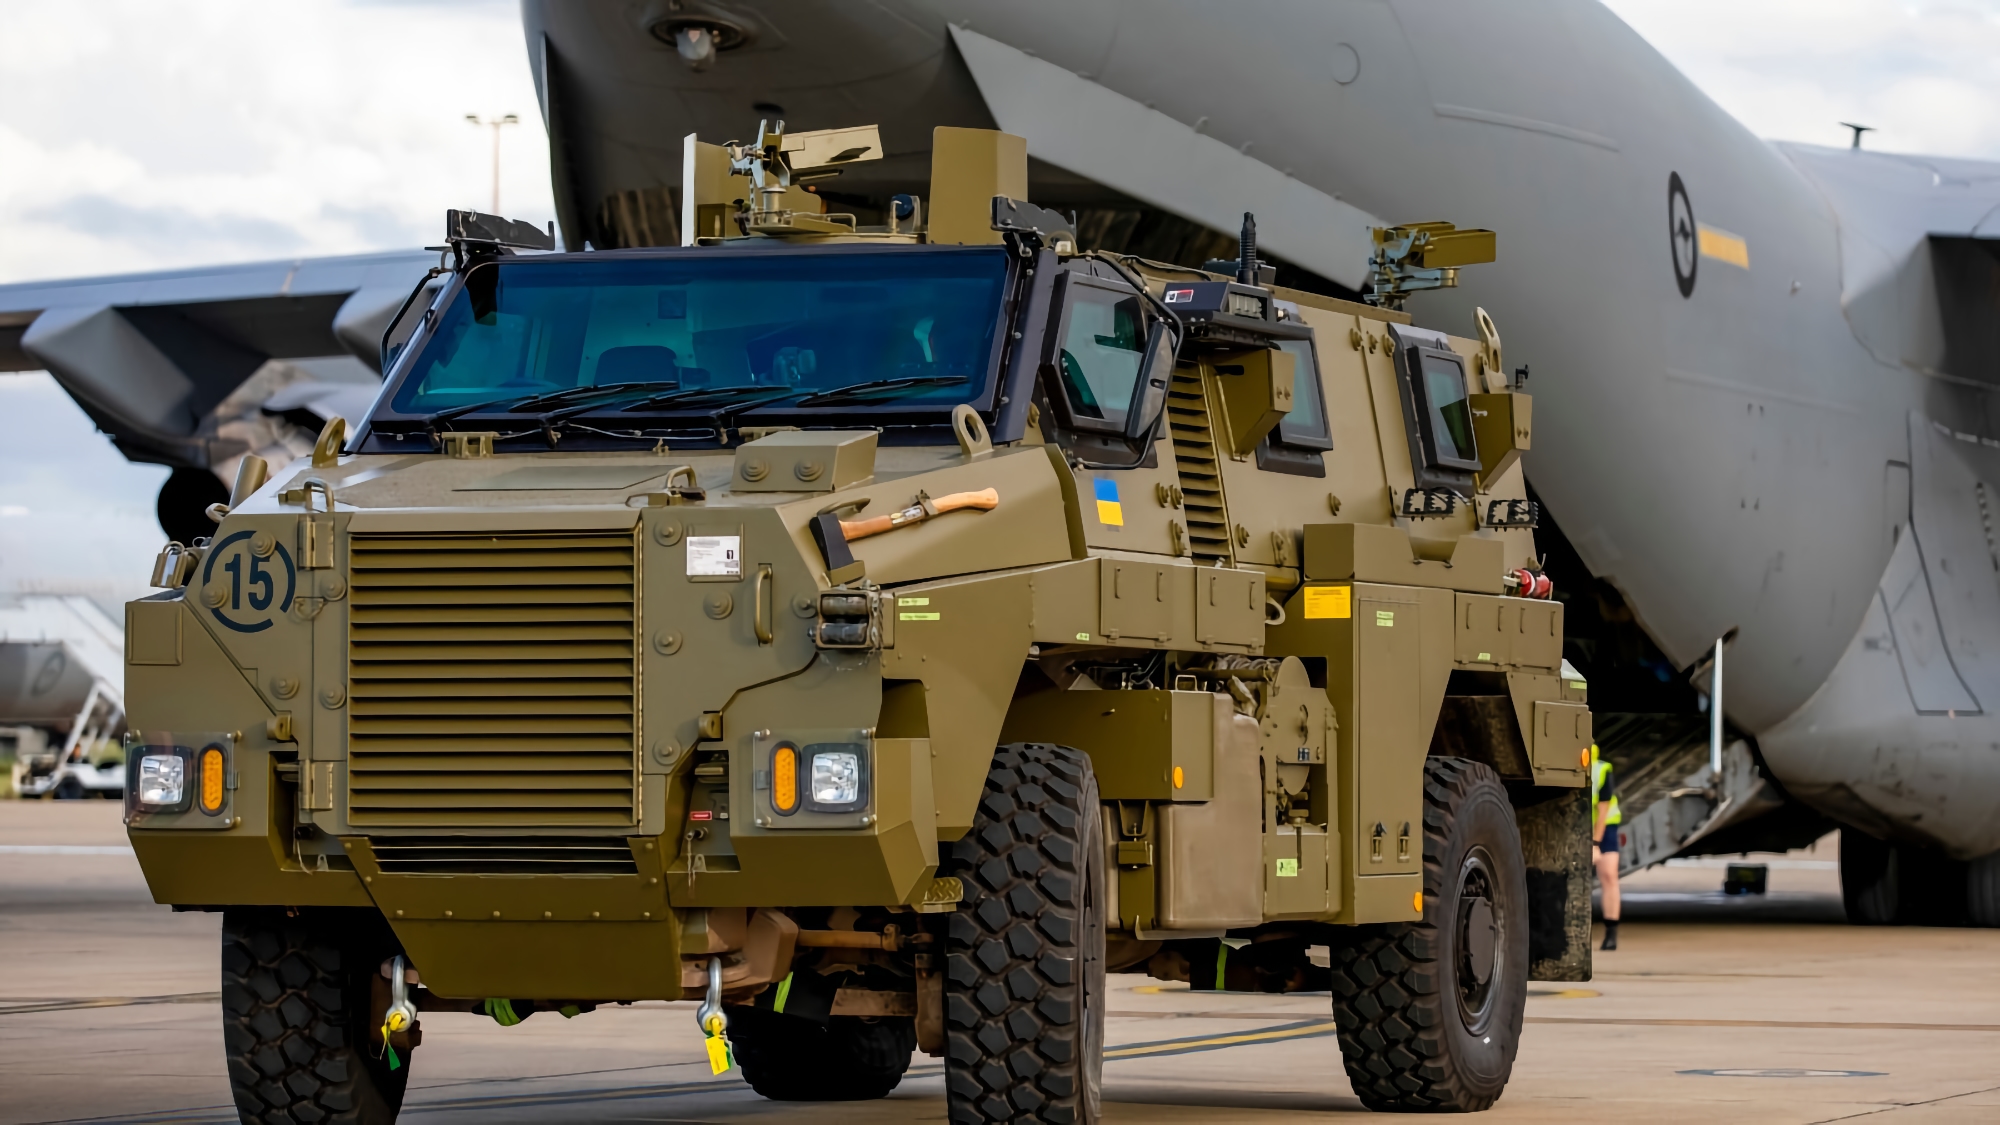 Véhicules blindés Bushmaster, véhicules blindés de transport de troupes M113 et matériel médical : l'Australie va transférer un nouveau lot d'aide militaire à l'Ukraine